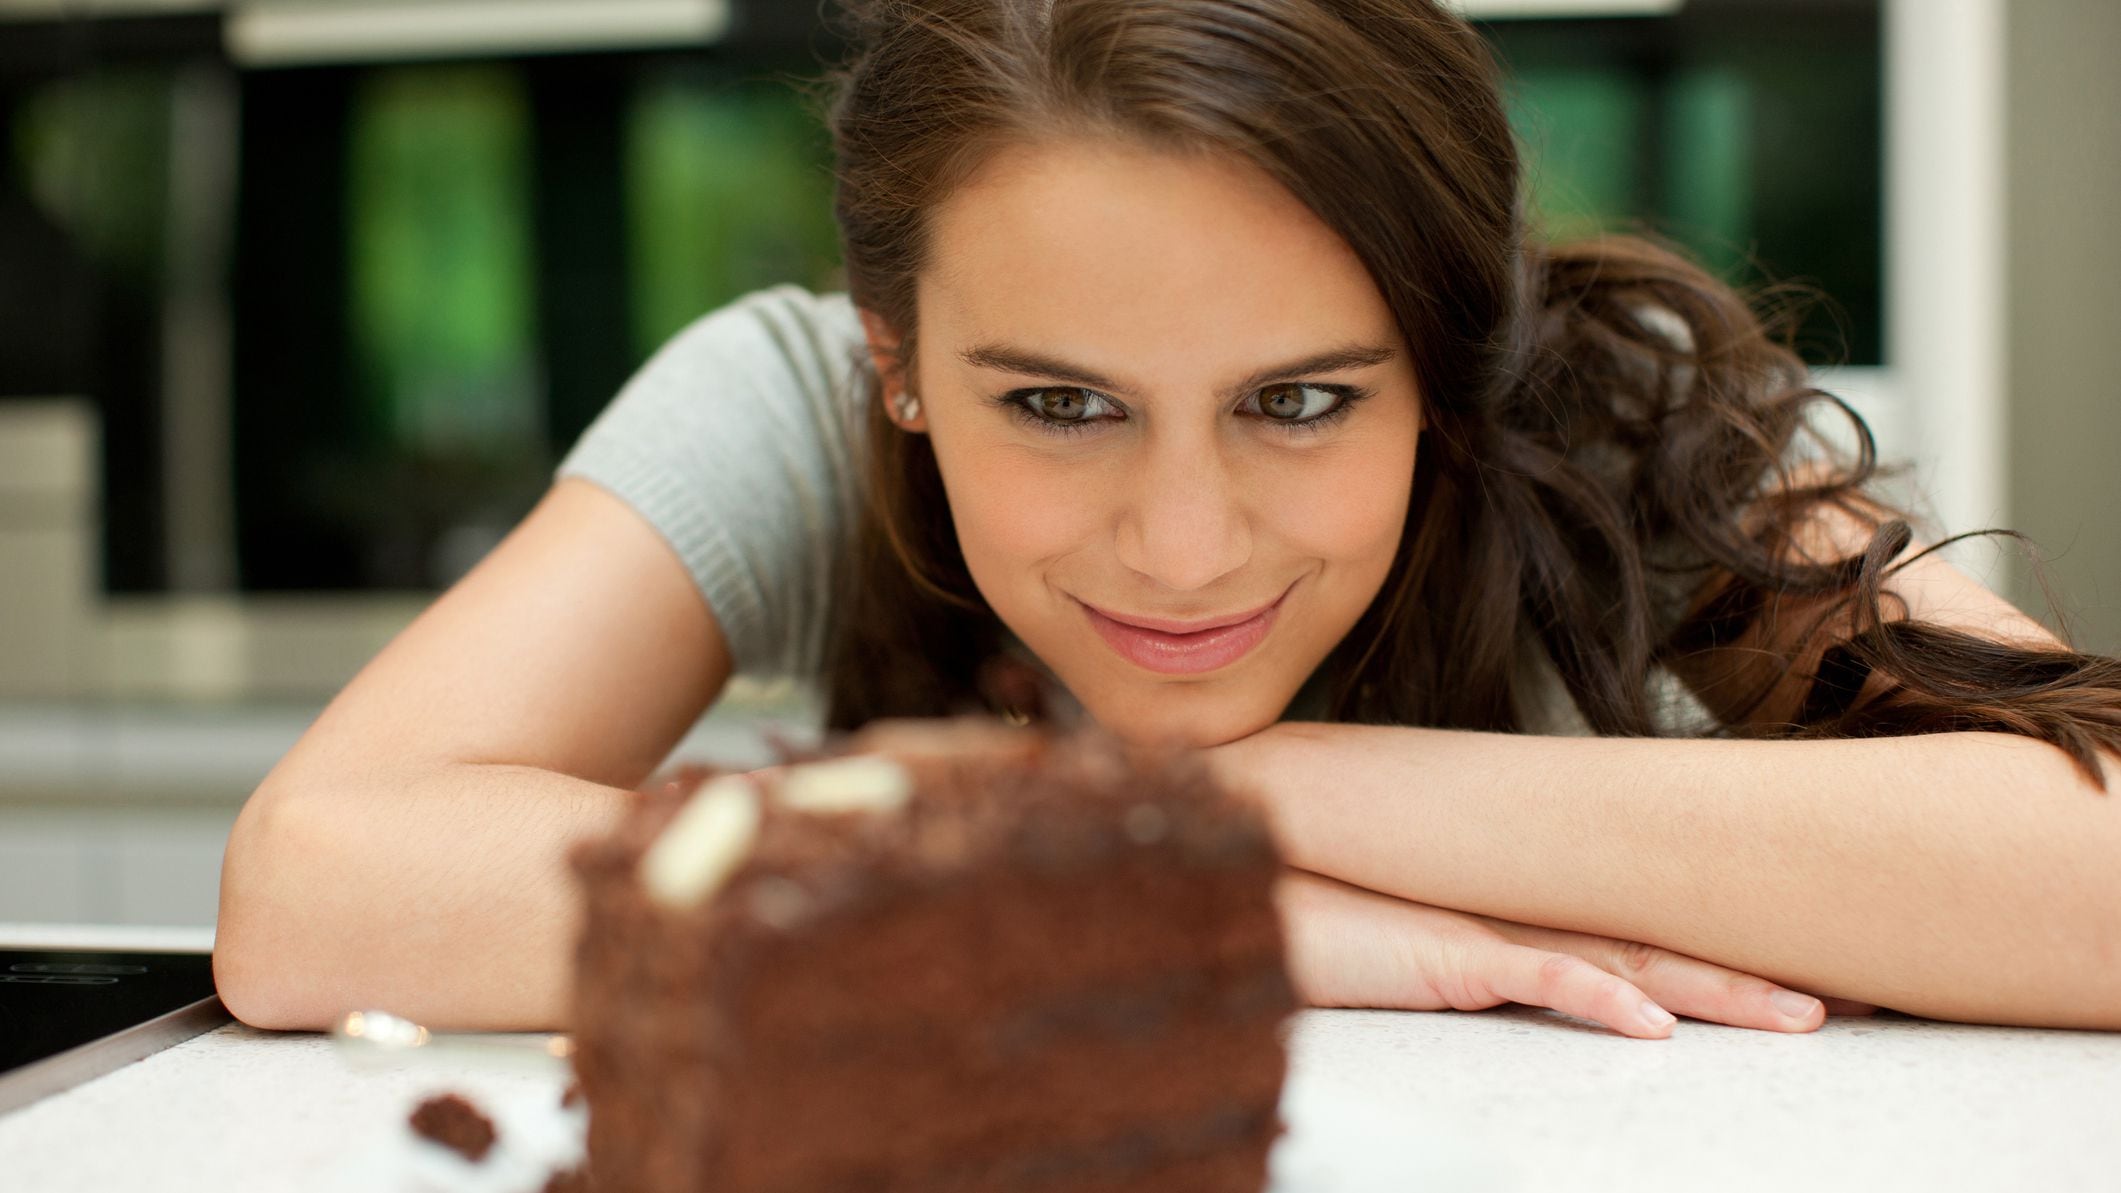 En muchas personas la relación con la comida involucra factores hormonales y emocionales (Getty)